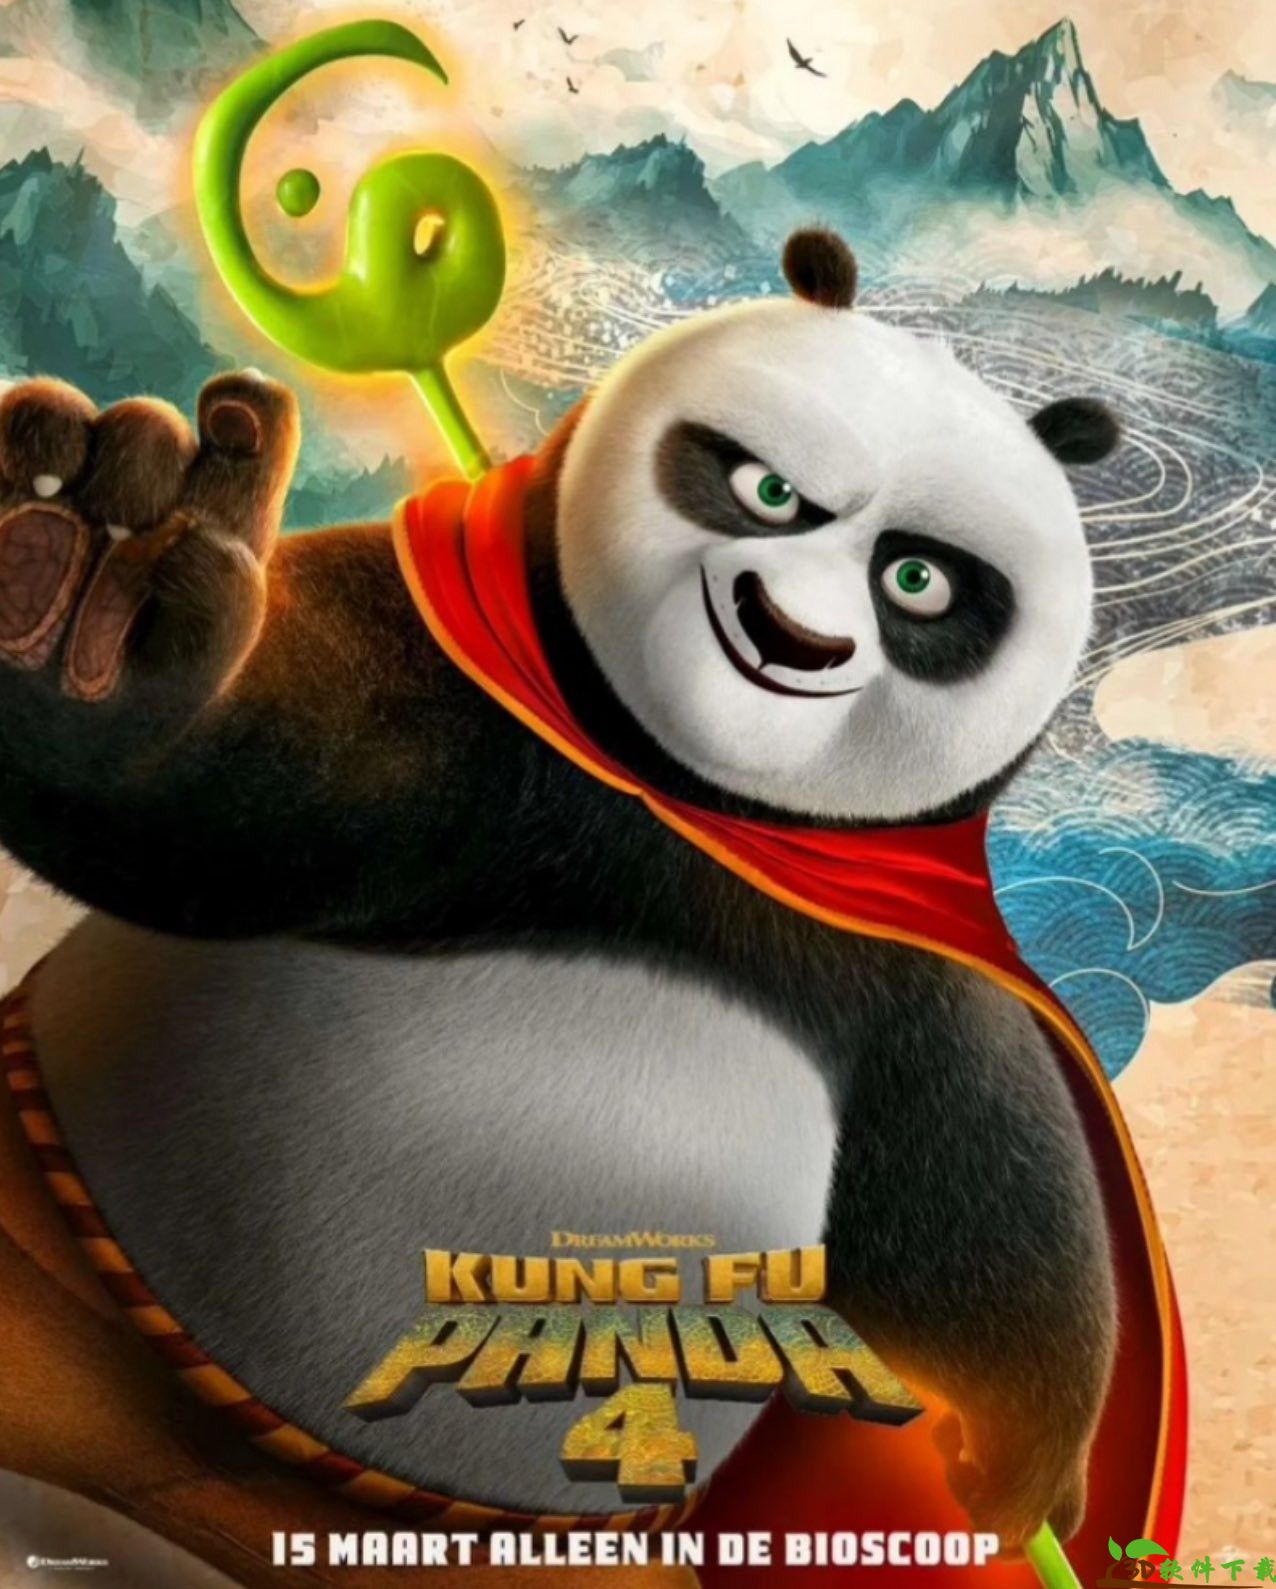 《功夫熊猫4》全新海报公布 神龙大侠阿宝帅气